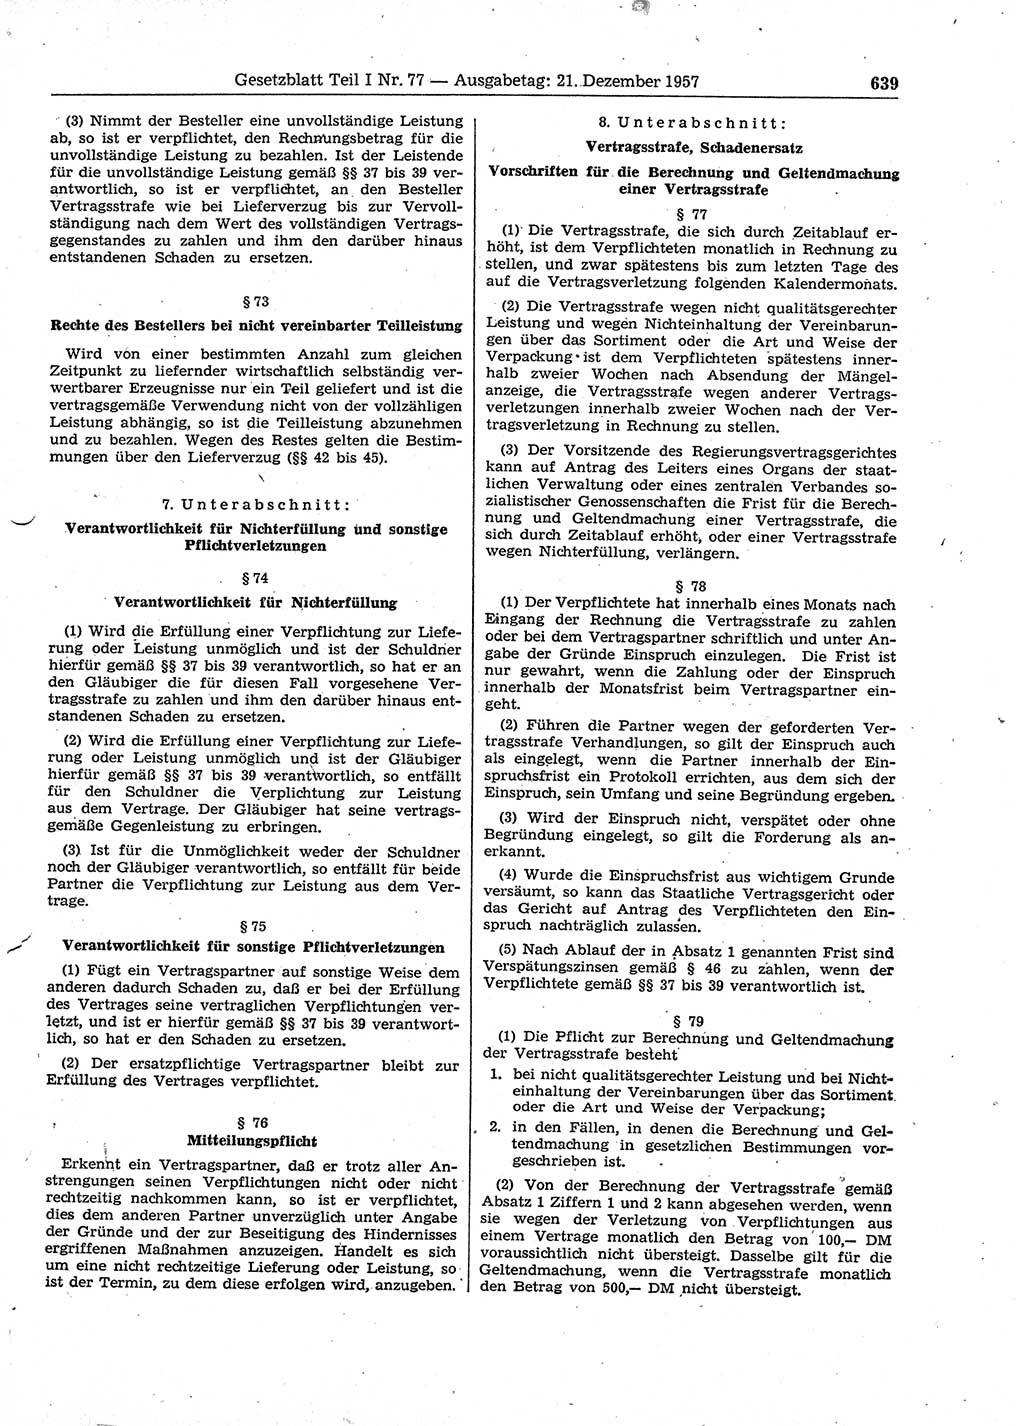 Gesetzblatt (GBl.) der Deutschen Demokratischen Republik (DDR) Teil Ⅰ 1957, Seite 639 (GBl. DDR Ⅰ 1957, S. 639)